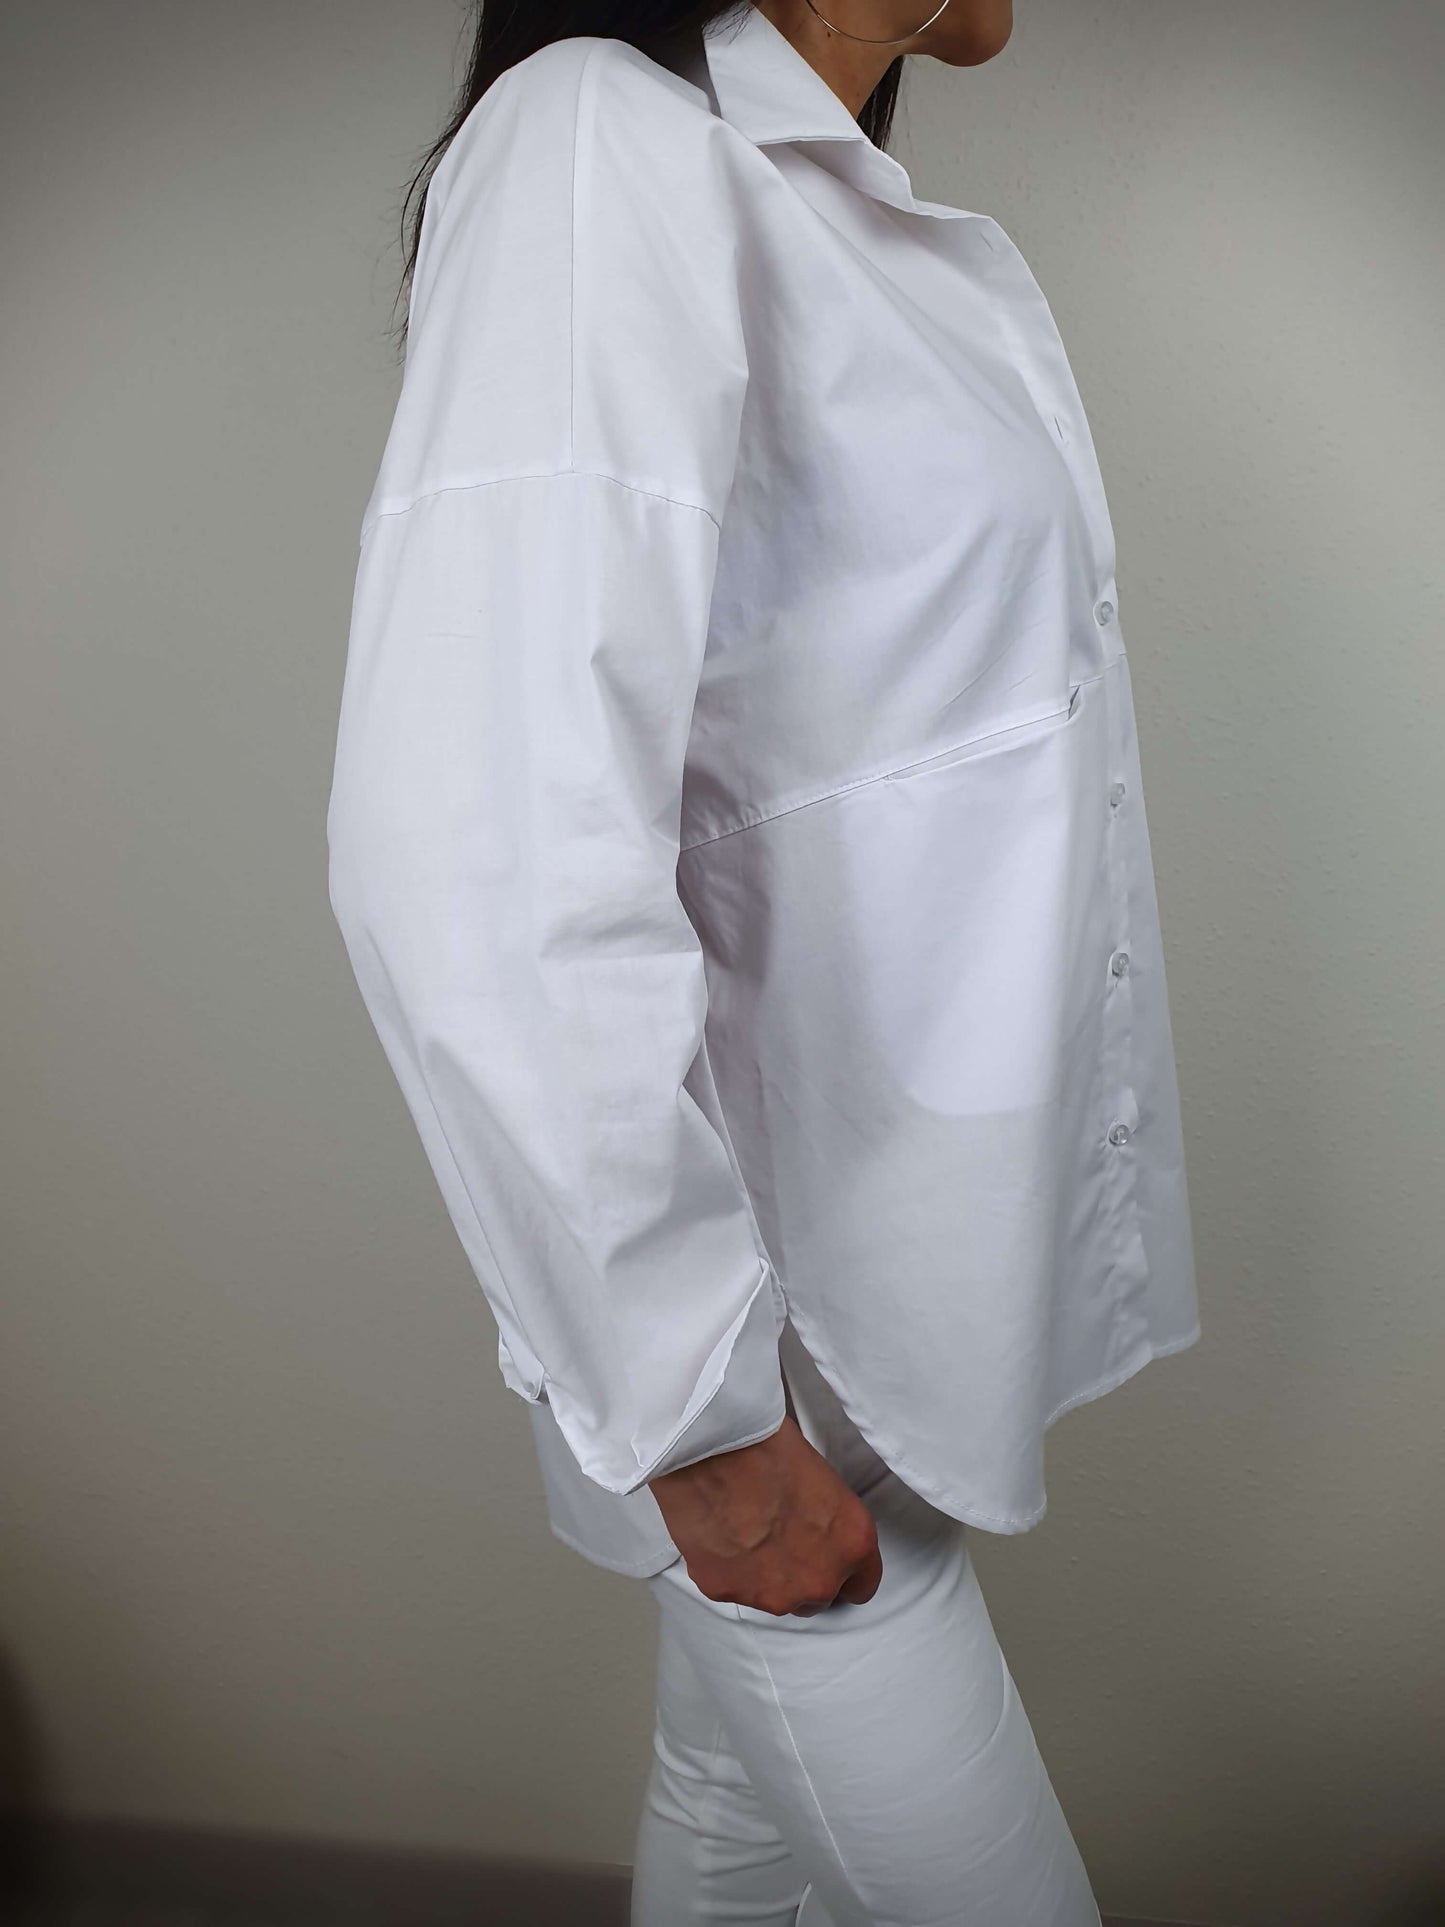 Chemise blanche manches longues à decouvrir sur www.gayano.fr